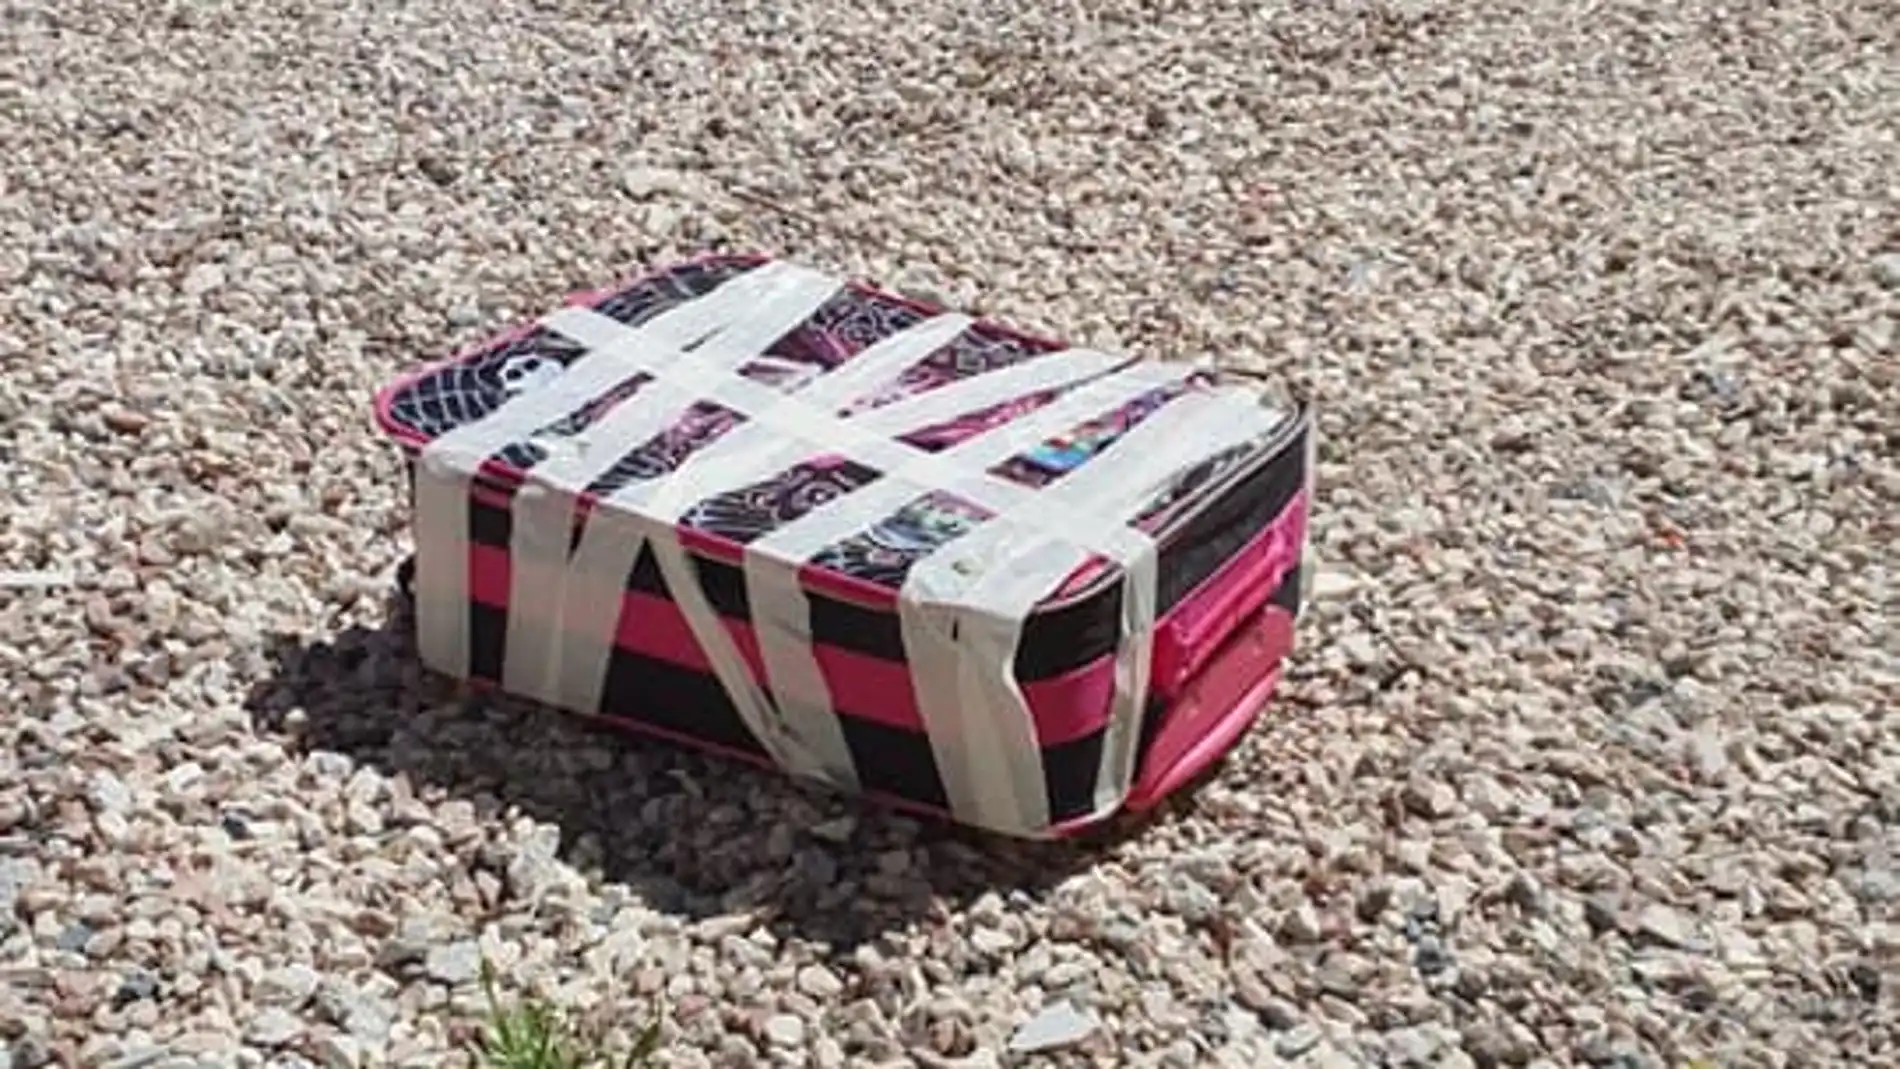 Cinco cachorros de gatos son rescatados de una maleta precintada a pleno sol en Alicante